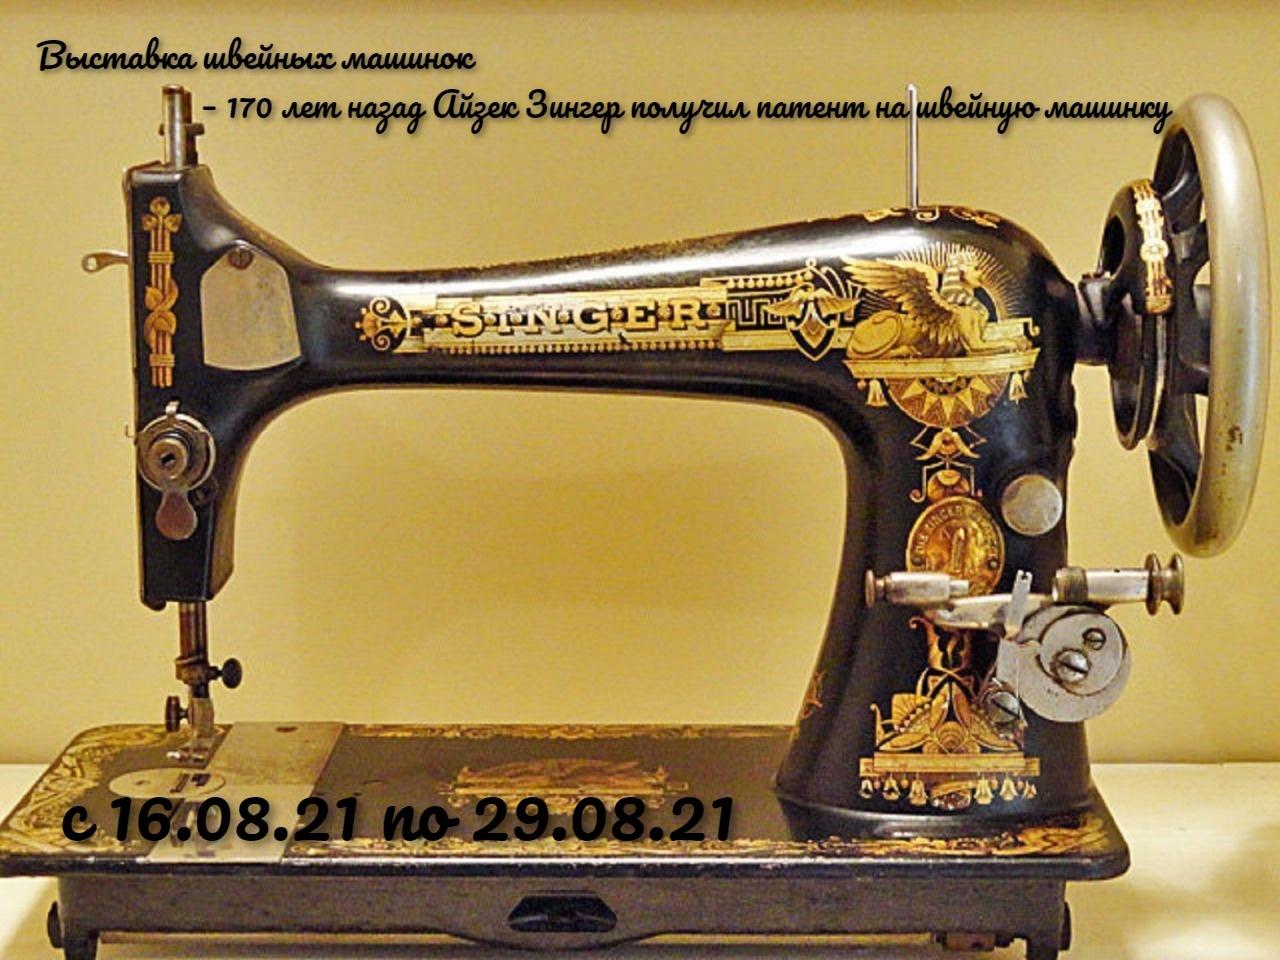 Швейная машинка зингер отзывы. Швейная машинка Зингера 1841. Швейная машинка Зингер а867968. Швейная машинка Зингер s010l. Zinger швейная машинка а3535836.